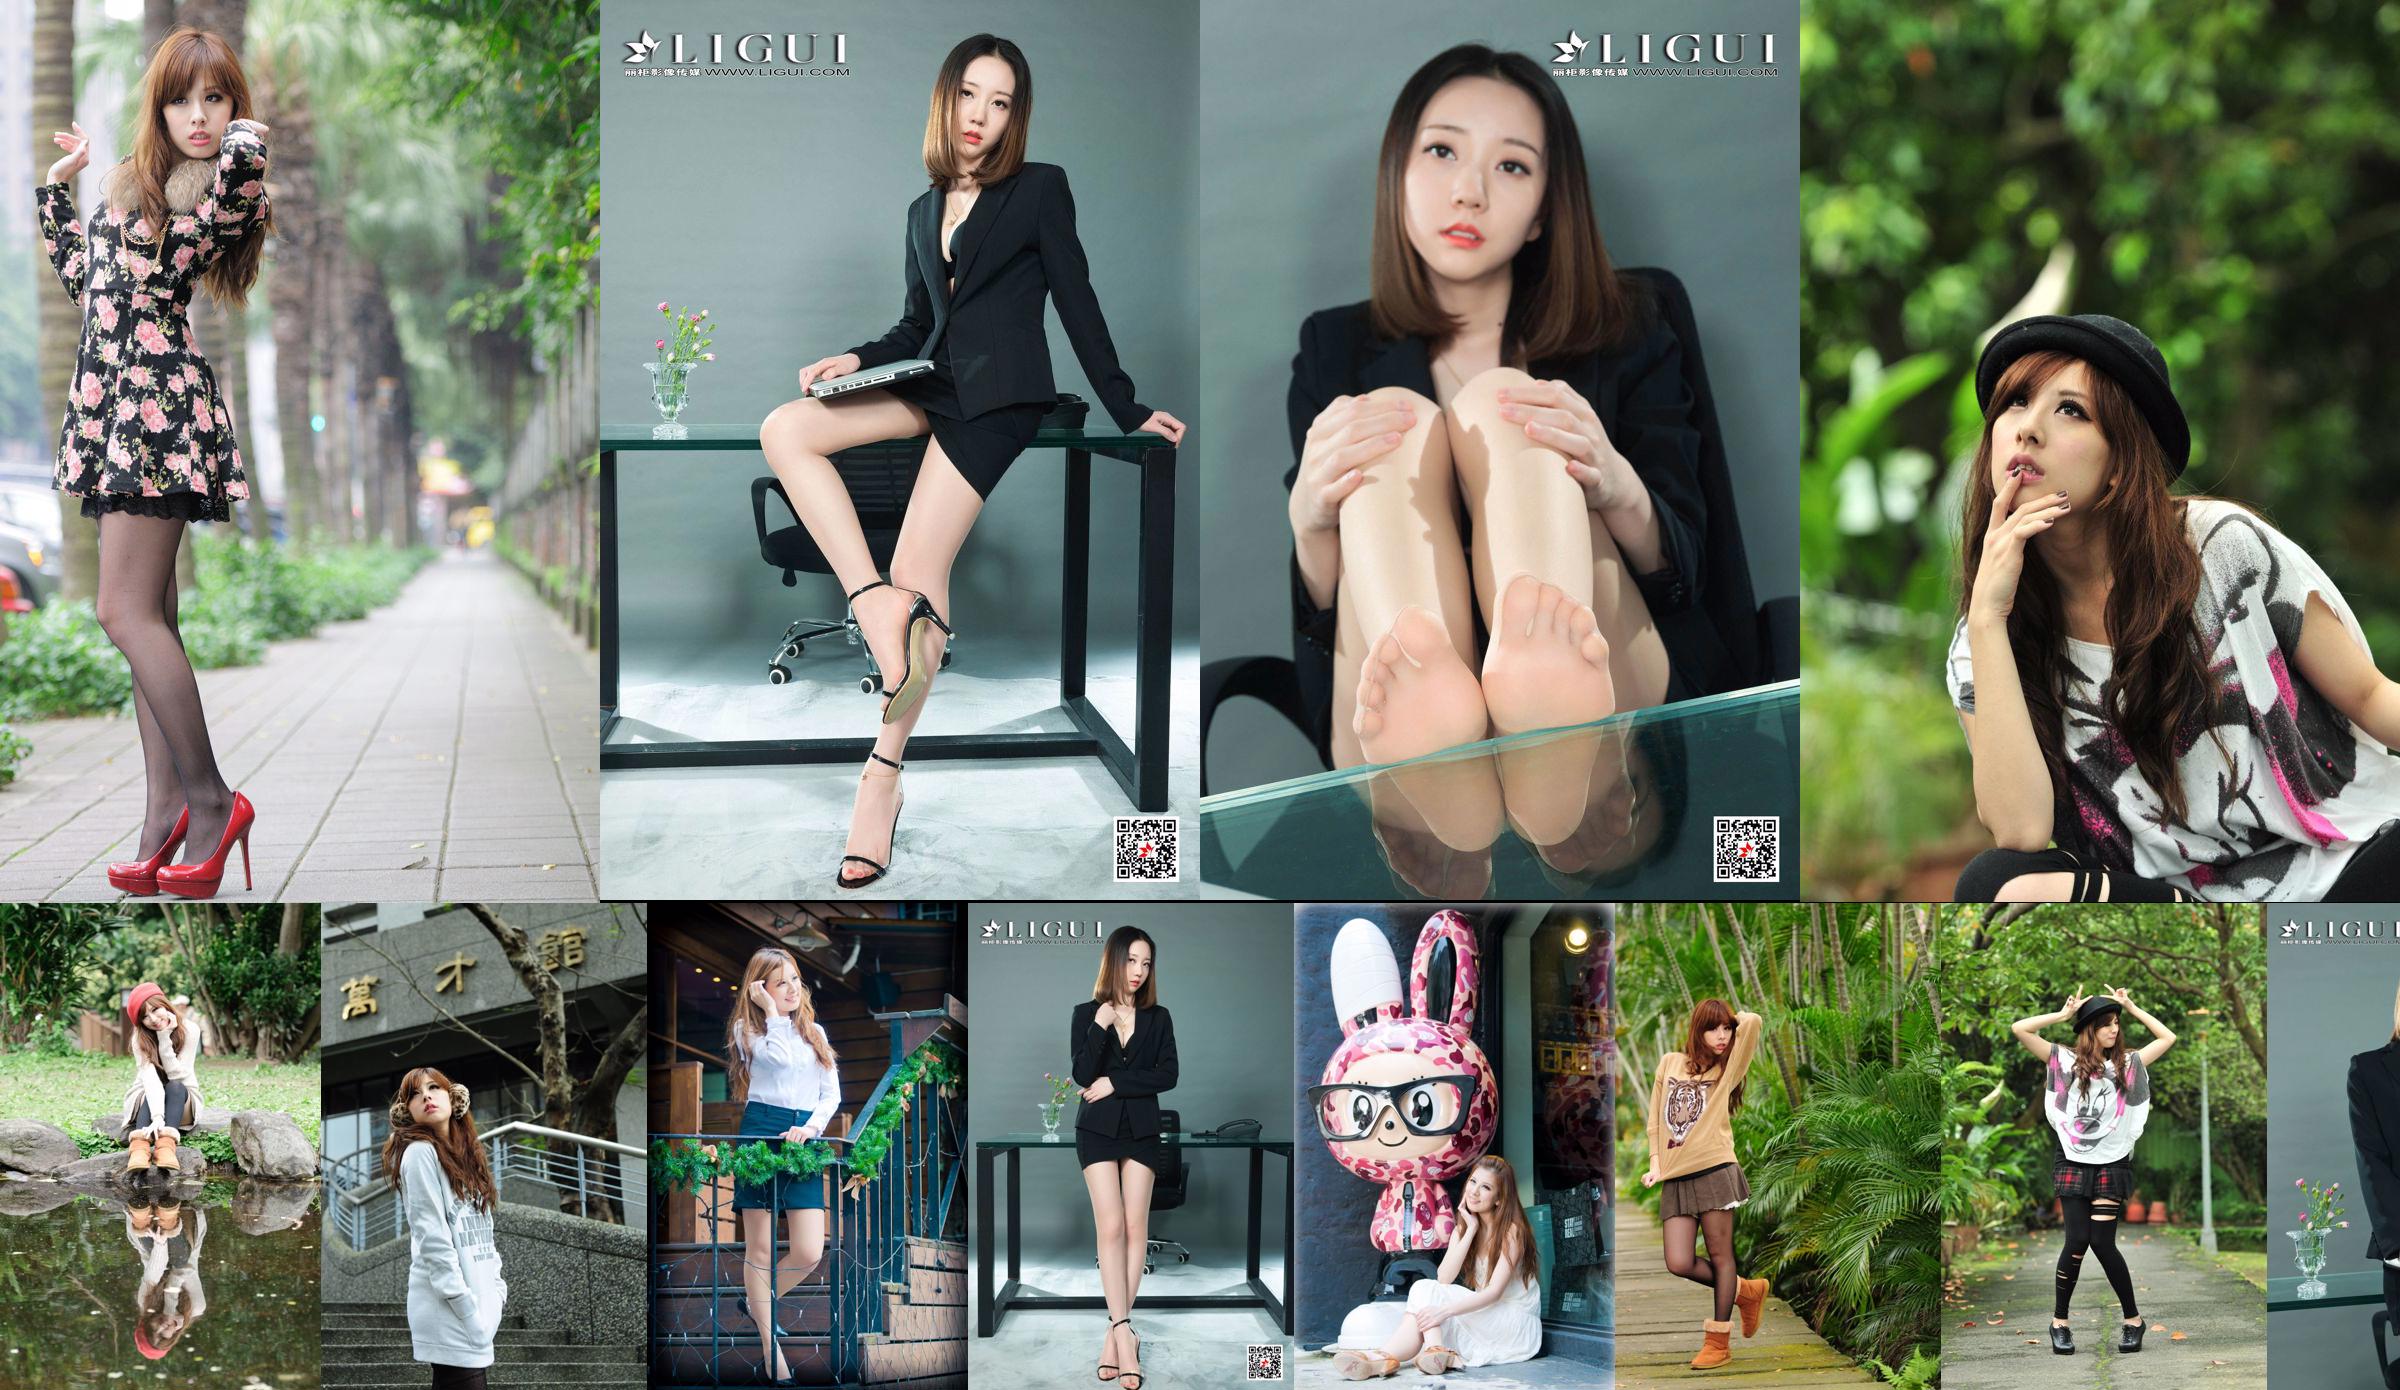 La hermana taiwanesa Xiaomi Kate su colección de fotos "Pequeñas imágenes frescas al aire libre" No.205b89 Página 3